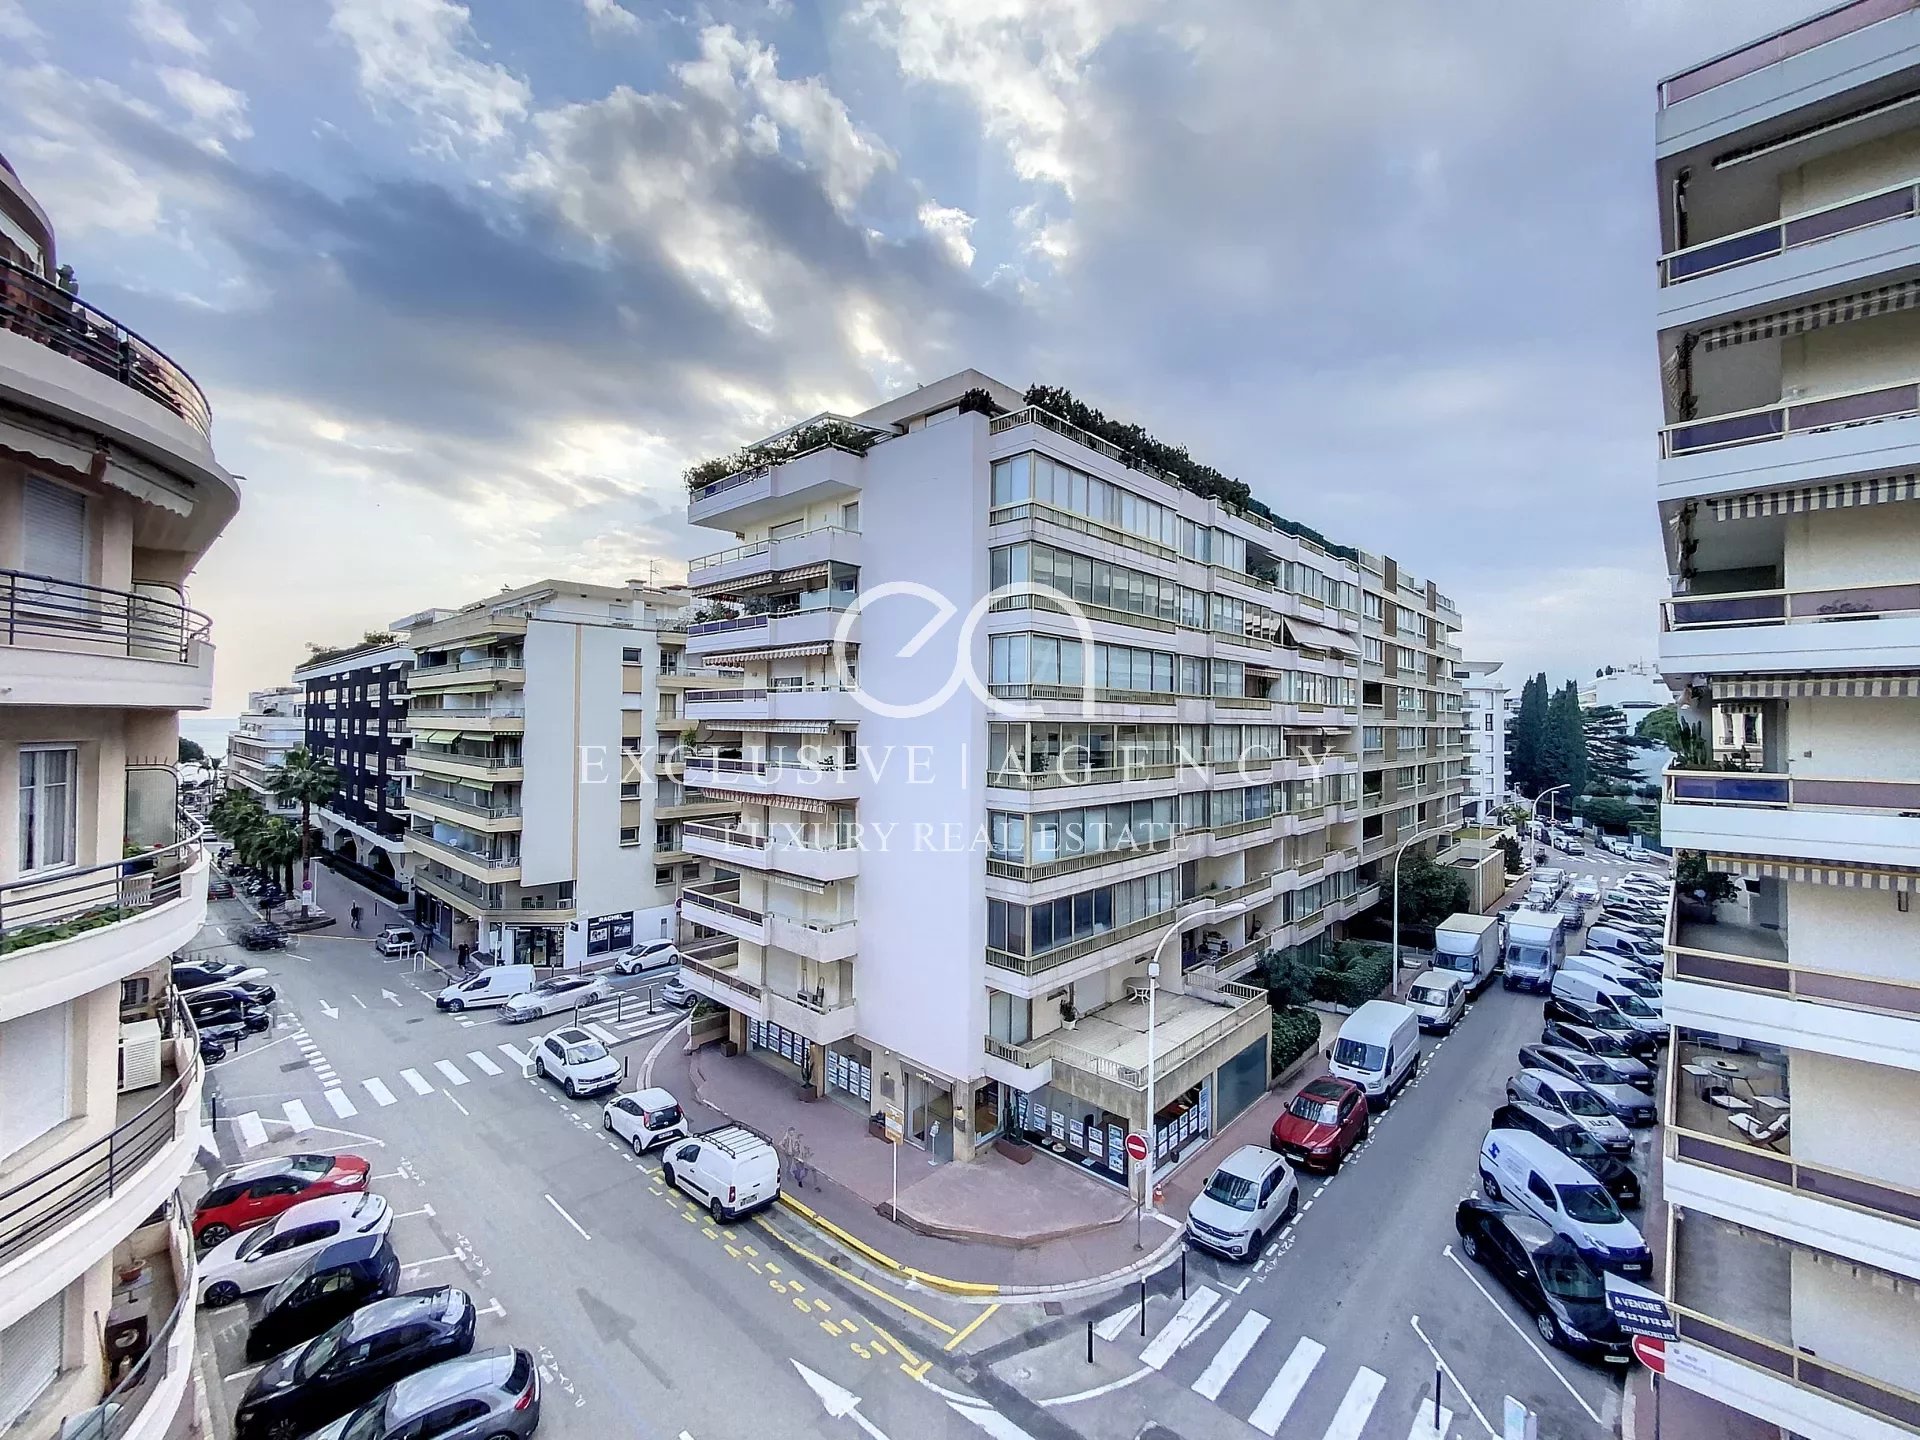 Vermietung im Zentrum von Cannes, möblierte 3-Zimmer-Wohnung, 85m², 200m von der Croisette entfernt